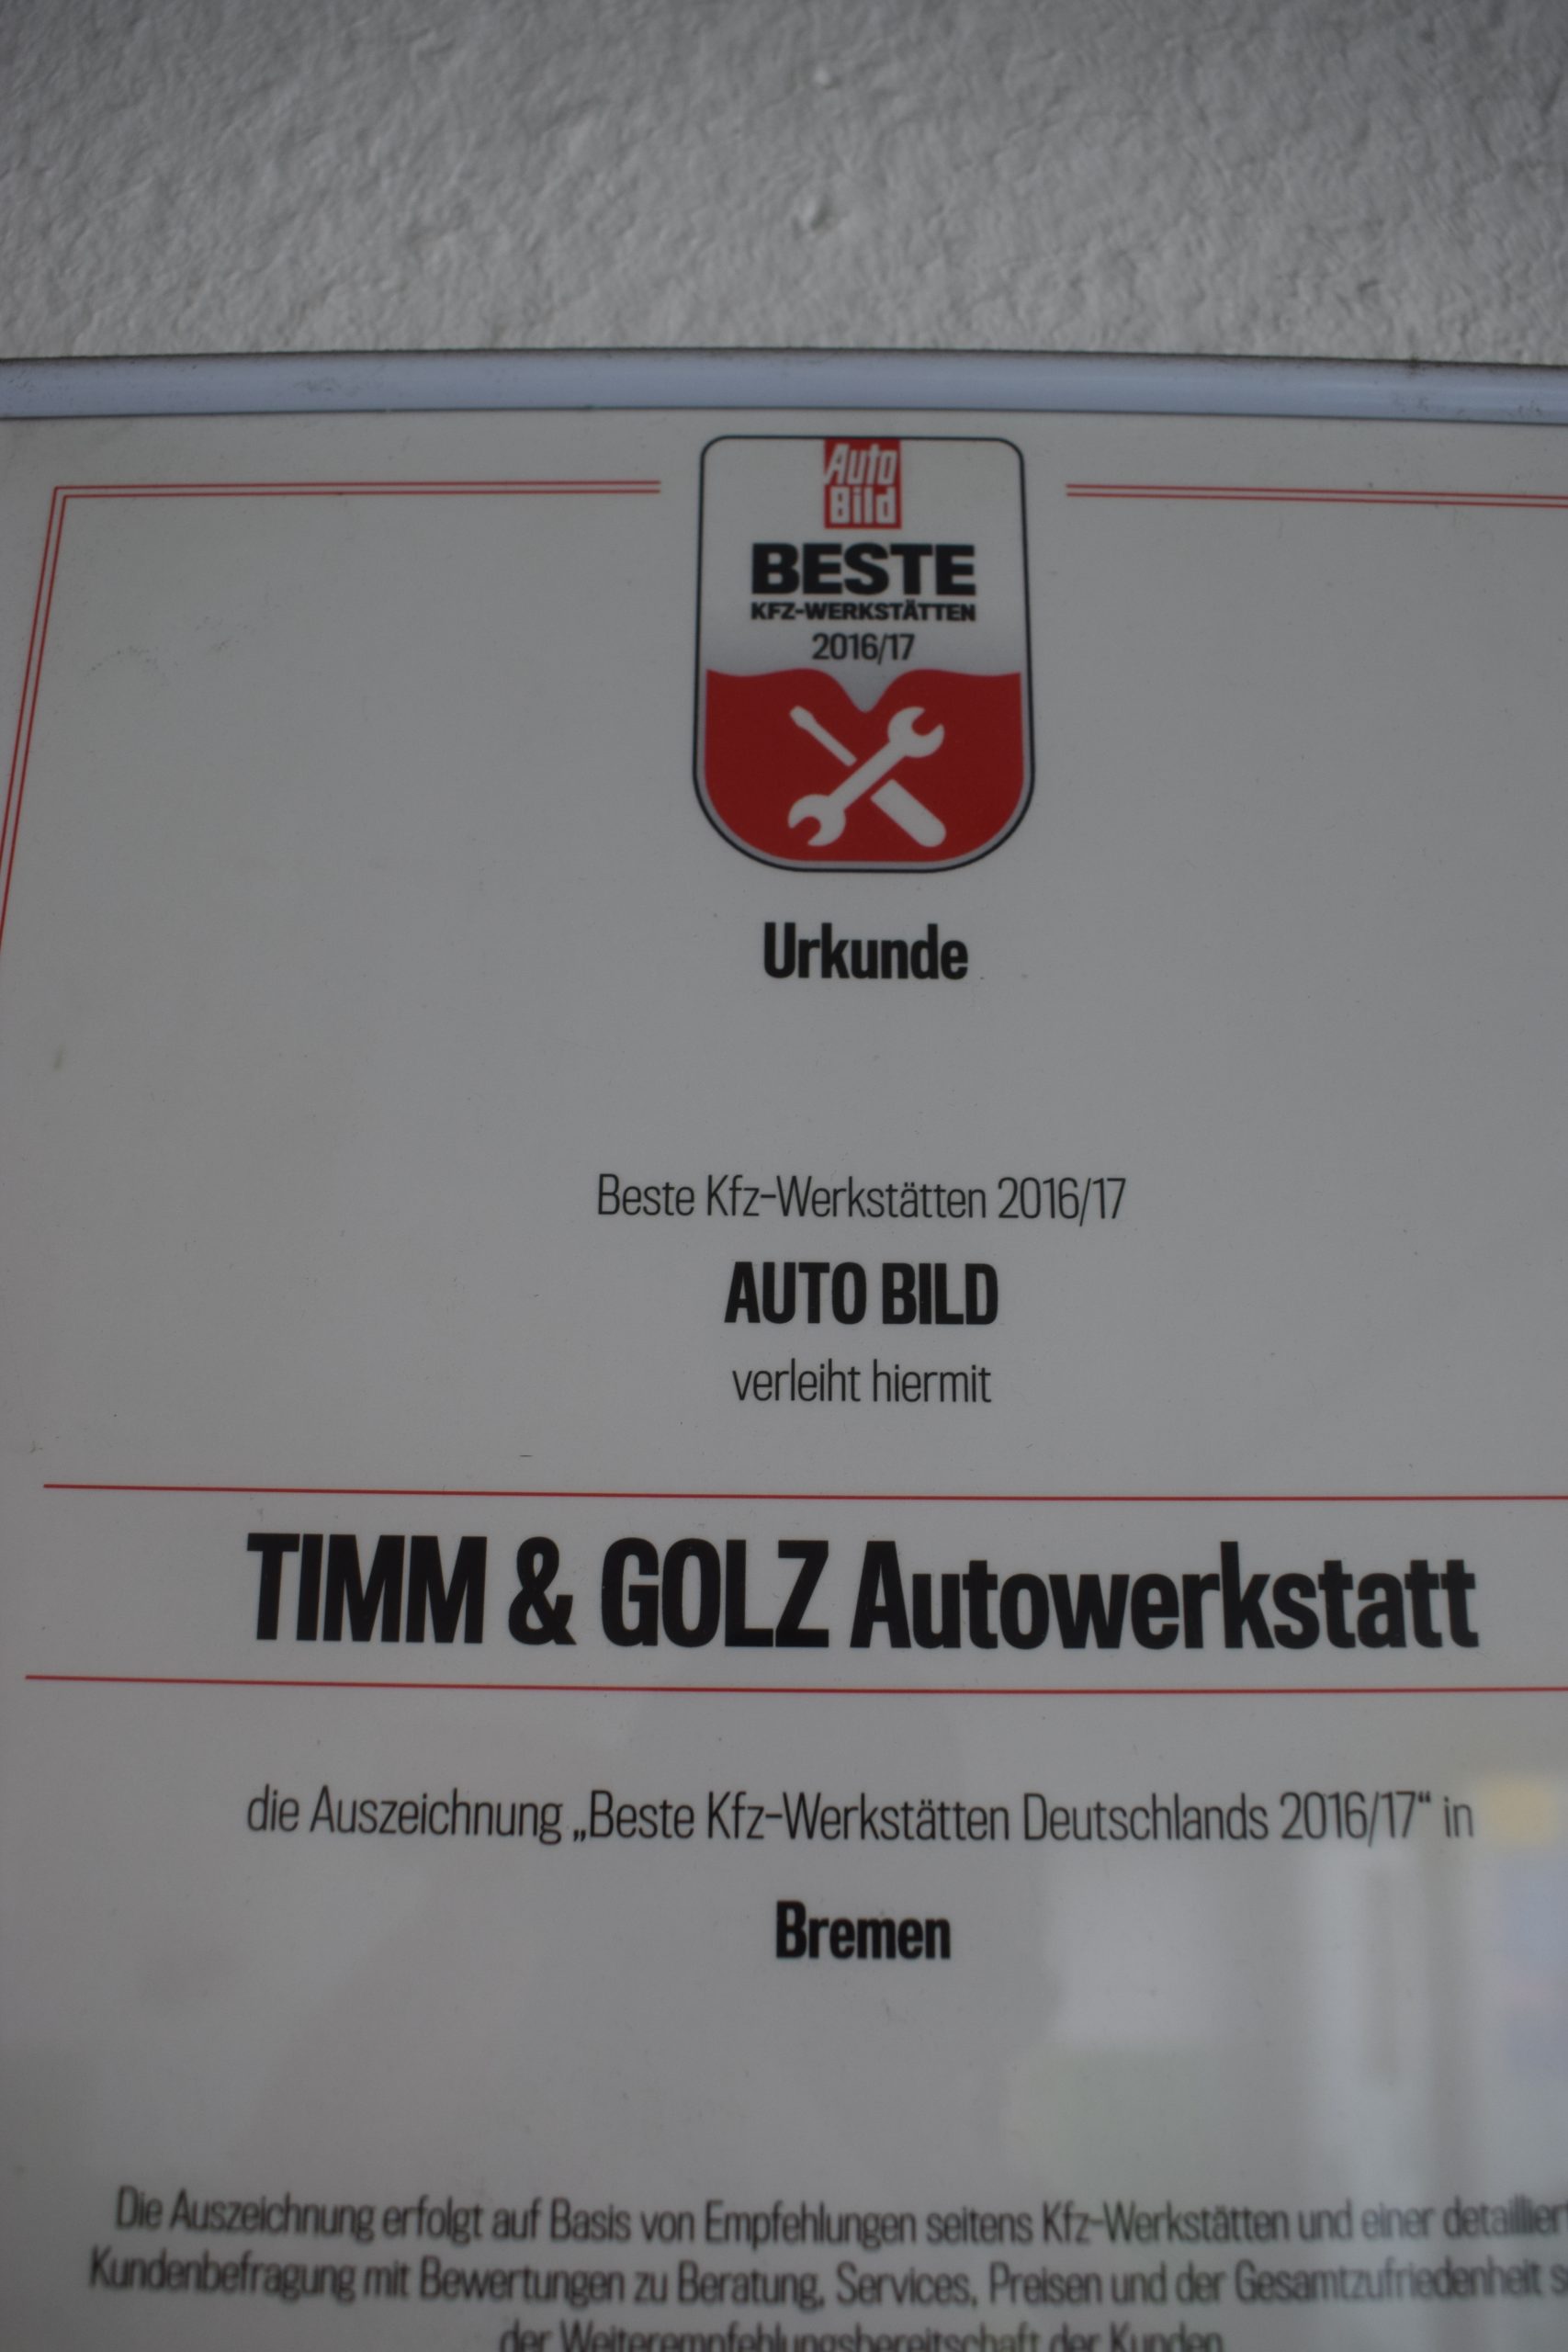 AutoBild hat die Werkstatt Timm & Golz getestet und ausgezeichnet